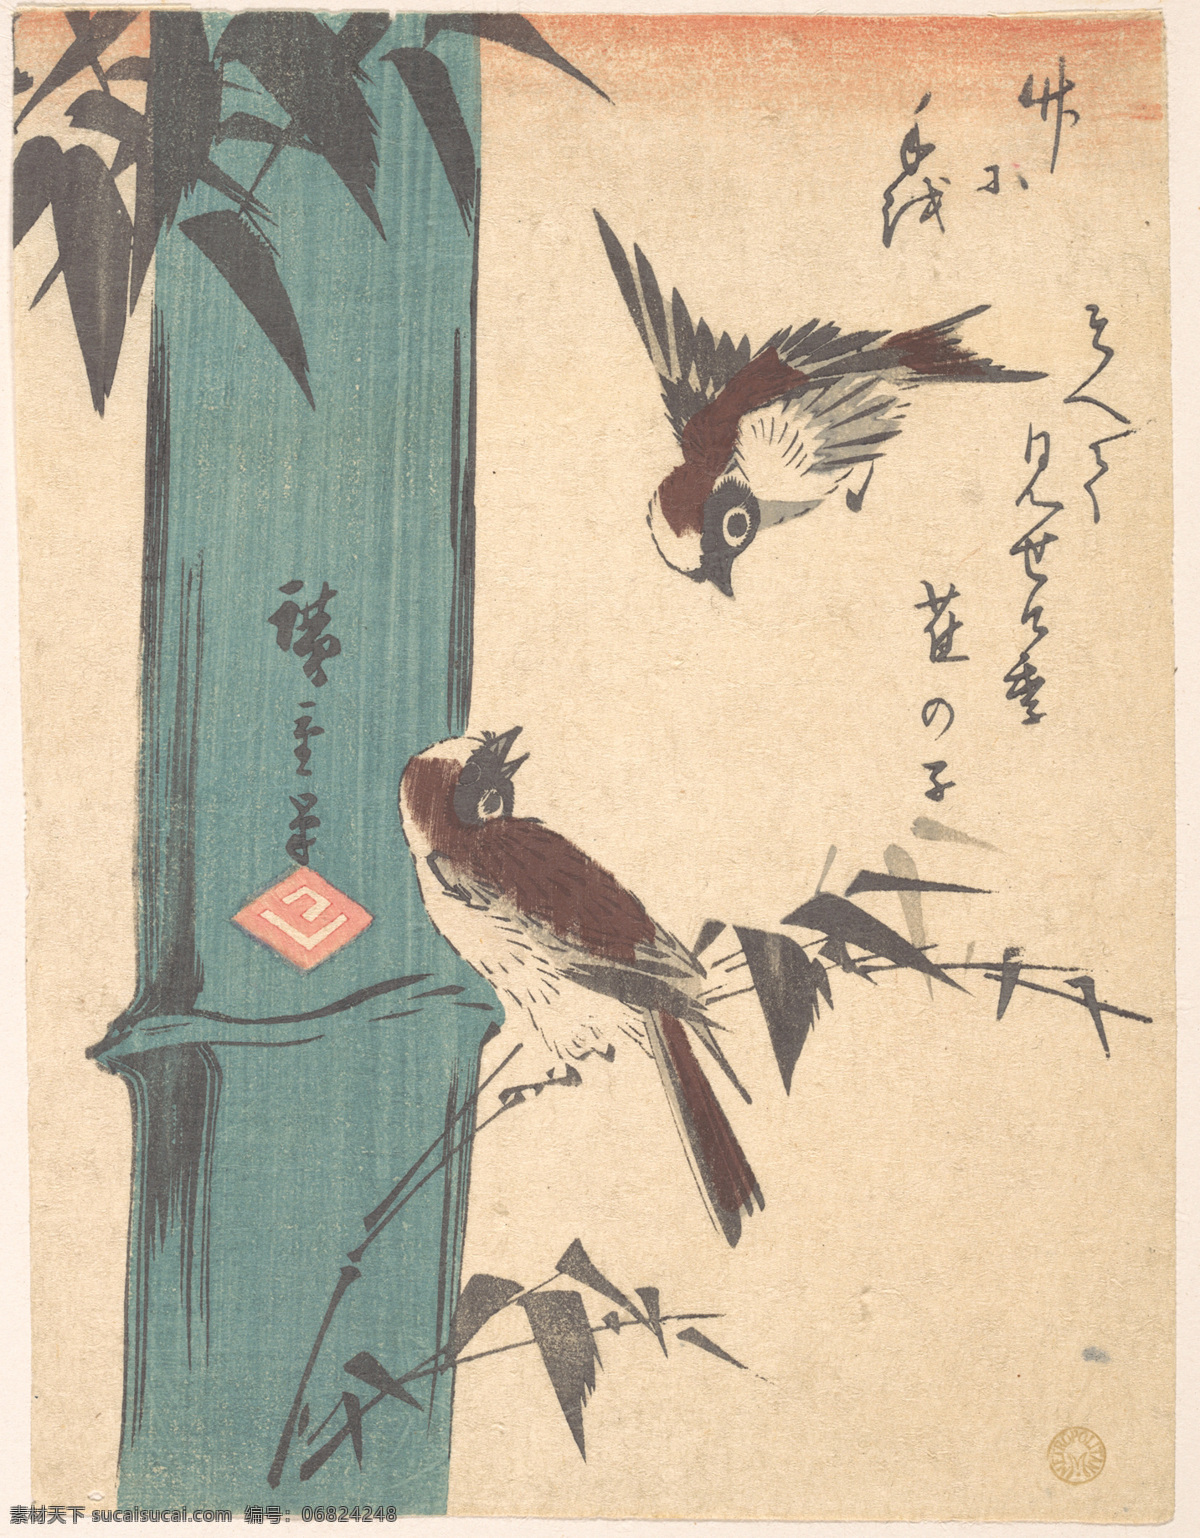 浮世绘 版画 日本 绘画 传统 美术 艺术 鸟 花鸟 竹子 竹节 竹林 美术馆藏品 绘画书法 文化艺术